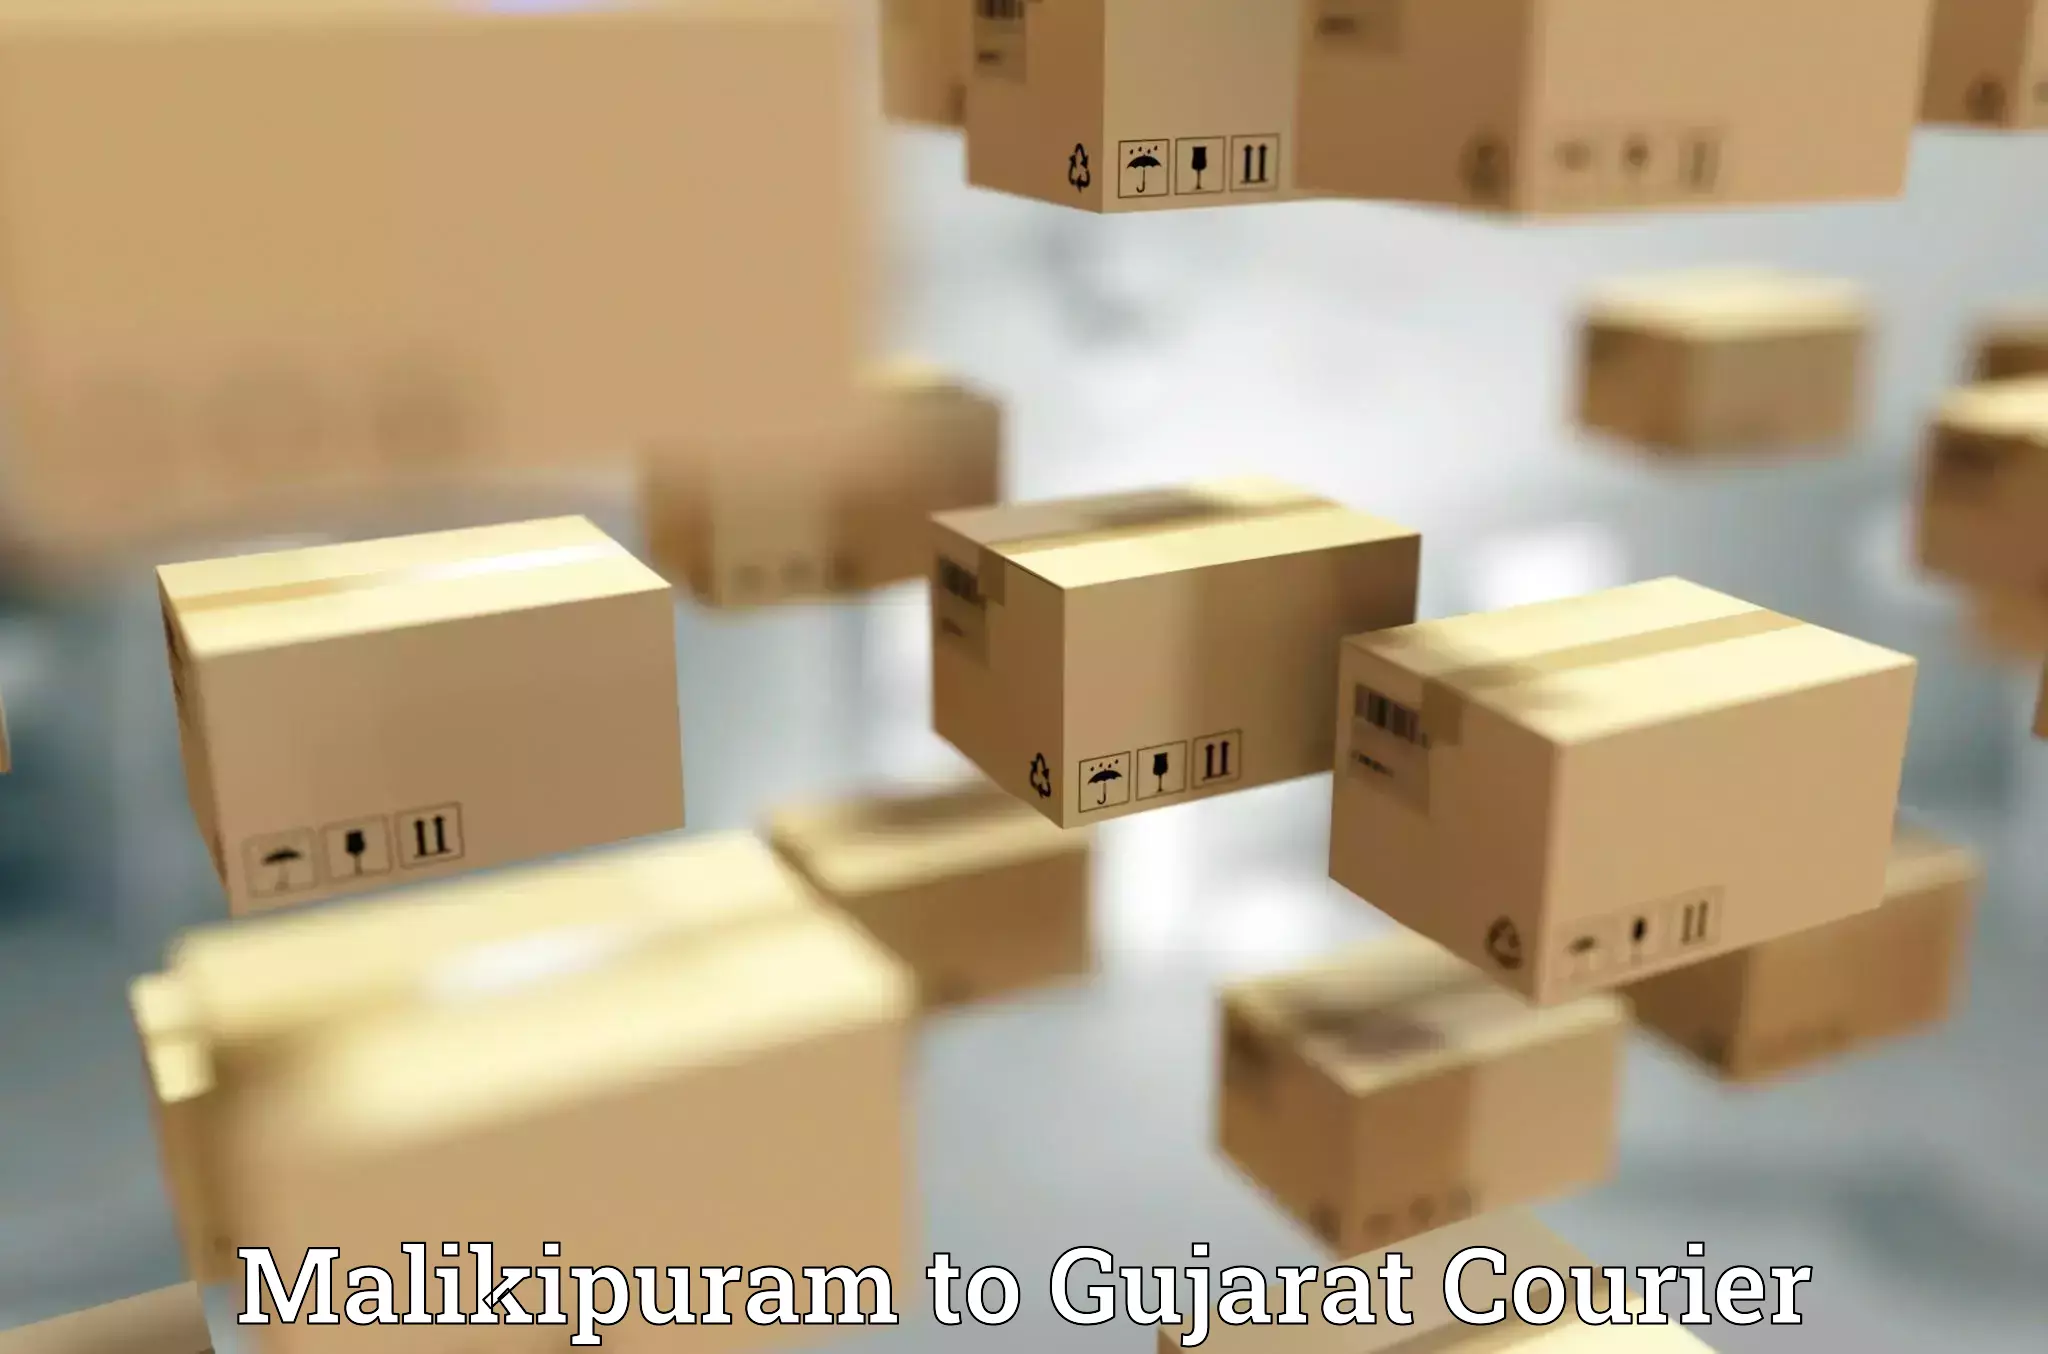 Modern courier technology Malikipuram to Ambaji